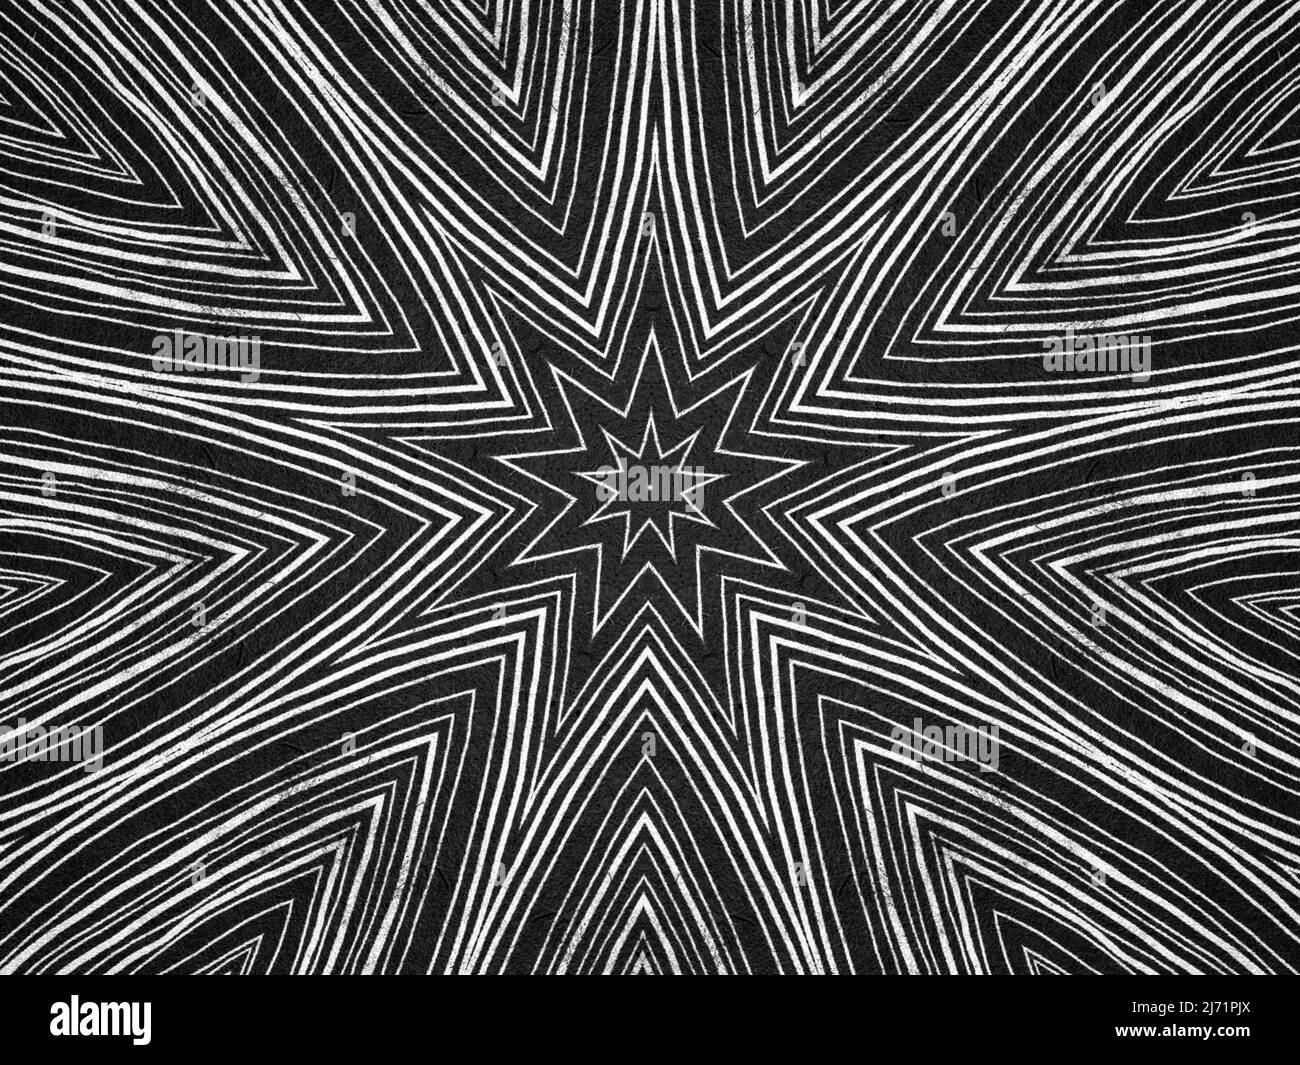 Líneas texturizadas y formas de estrellas patrón psicodélico. Ilustración en blanco y negro. Foto de stock